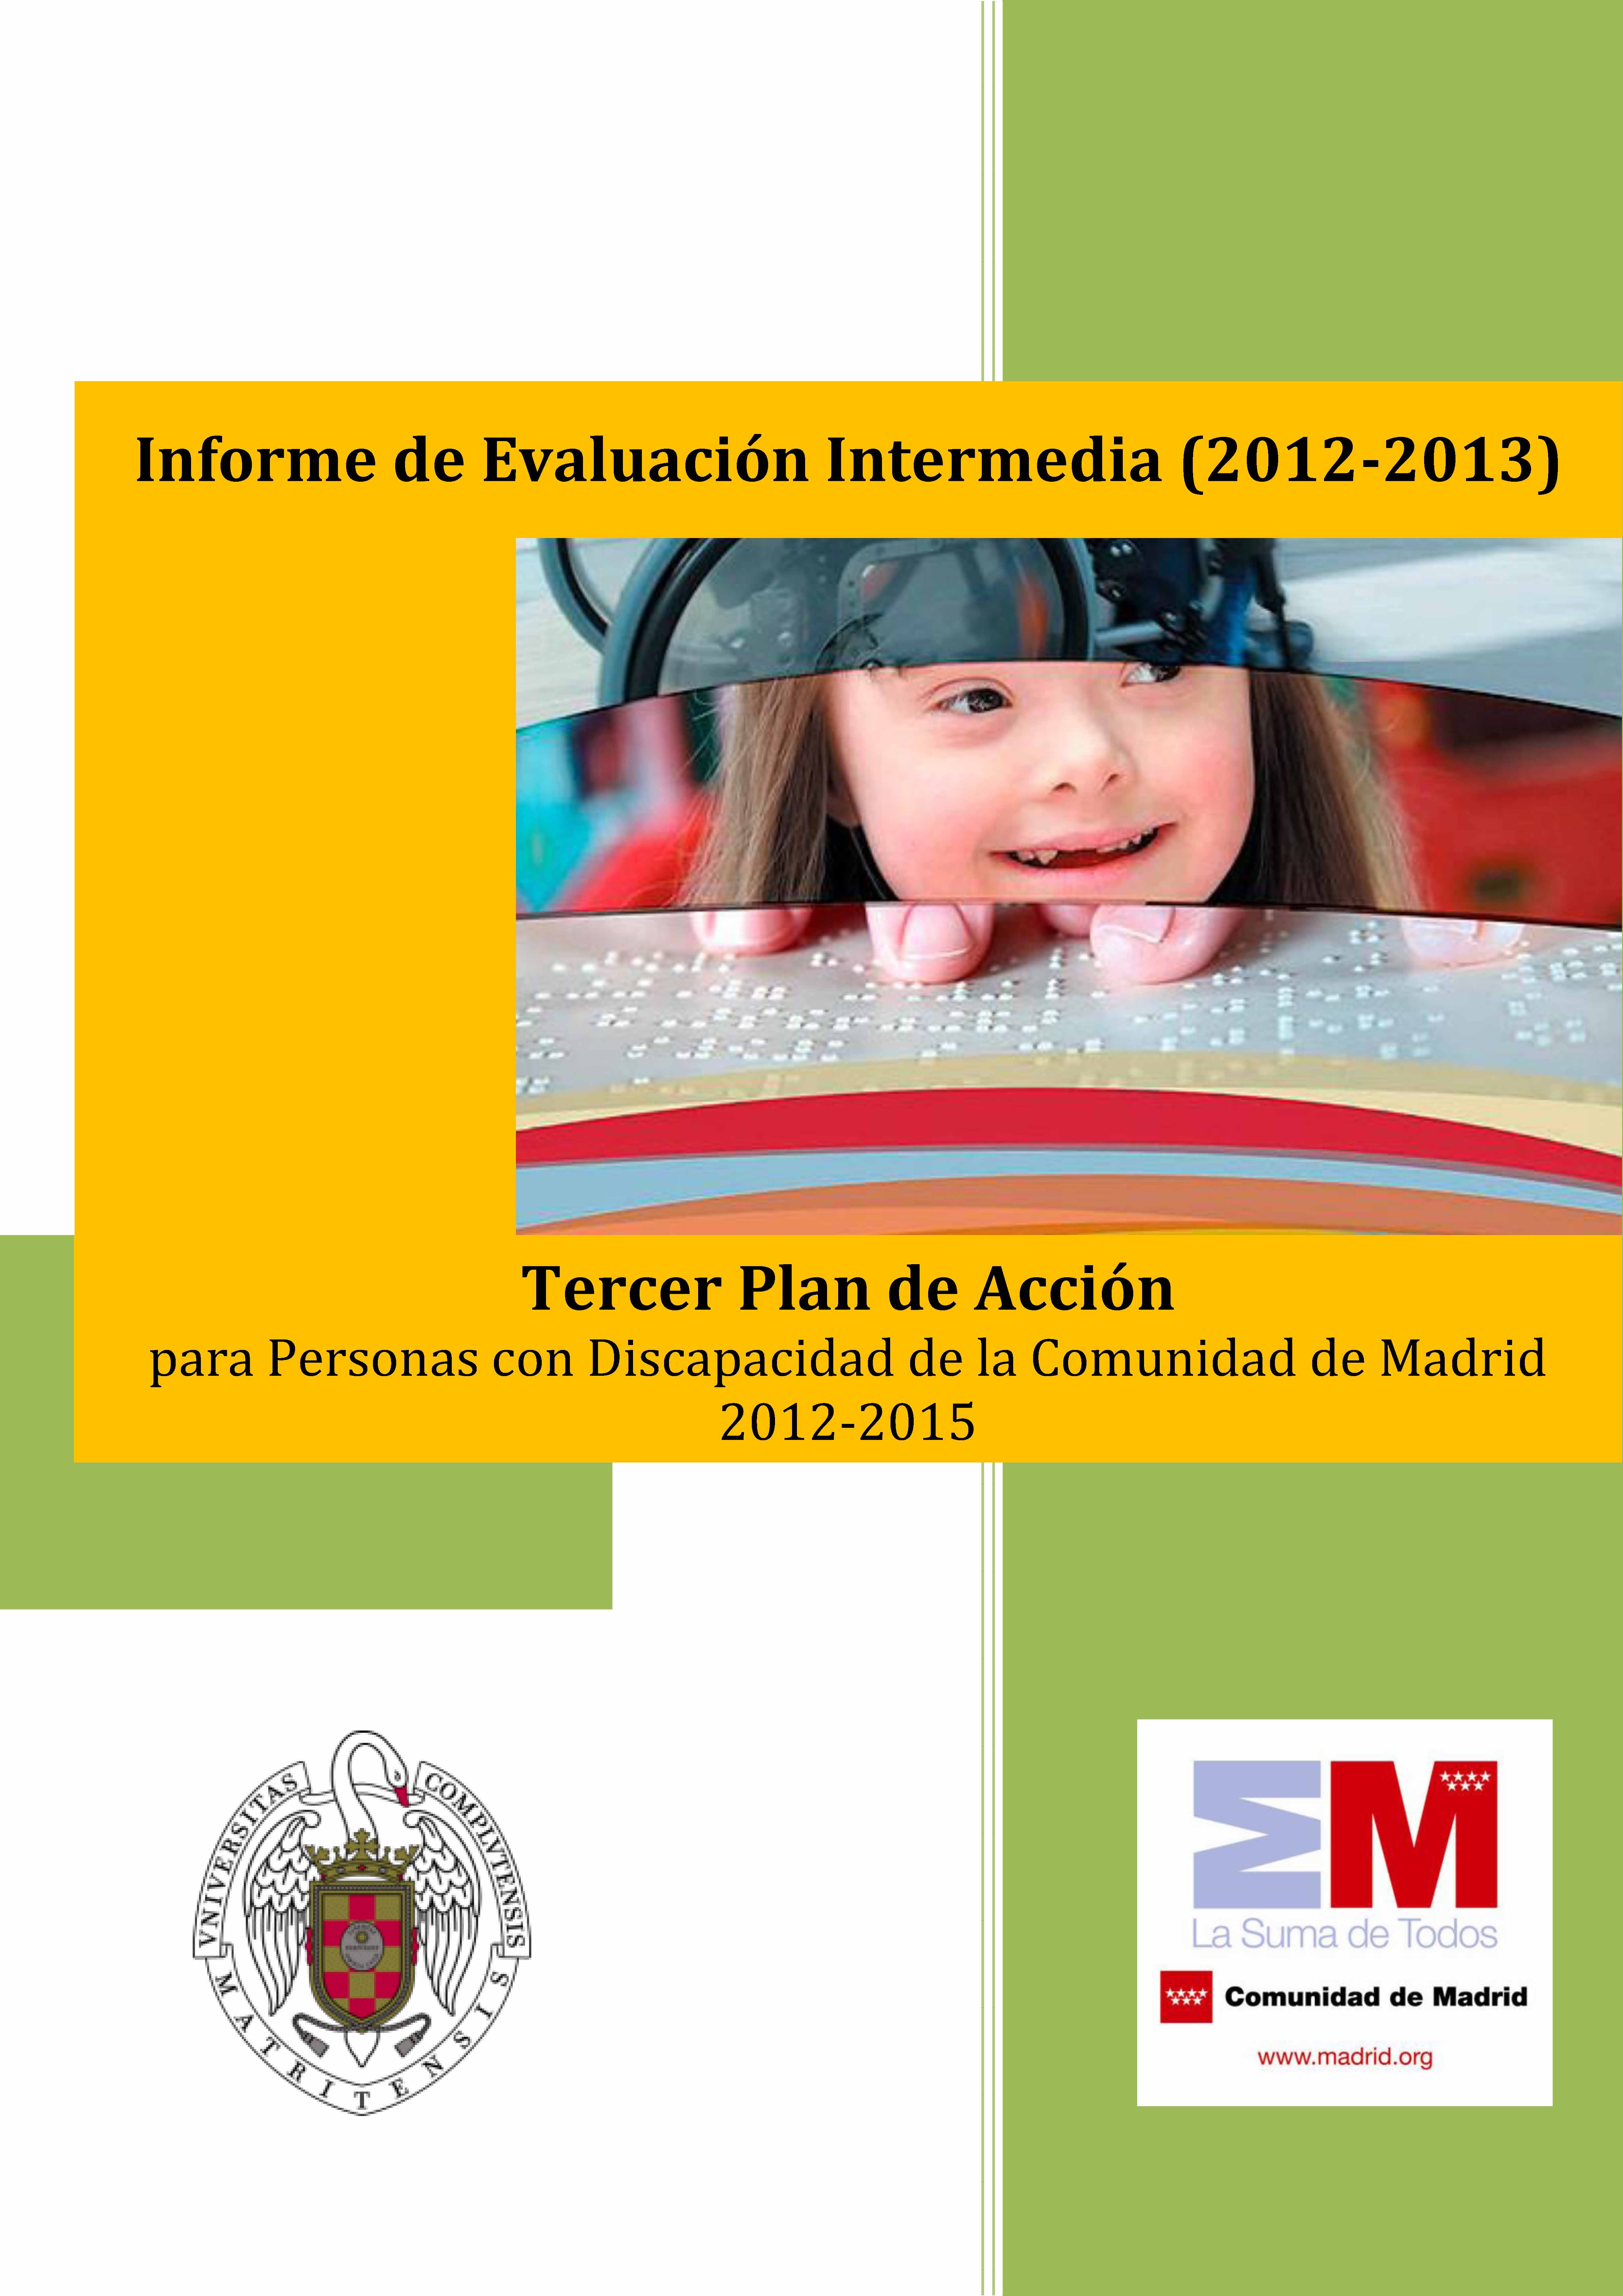 Portada de Informe de Evaluación Intermedia (2012-2013).Tercer Plan de Acción para Personas con Discapacidad de la Comunidad de Madrid 2012-2015